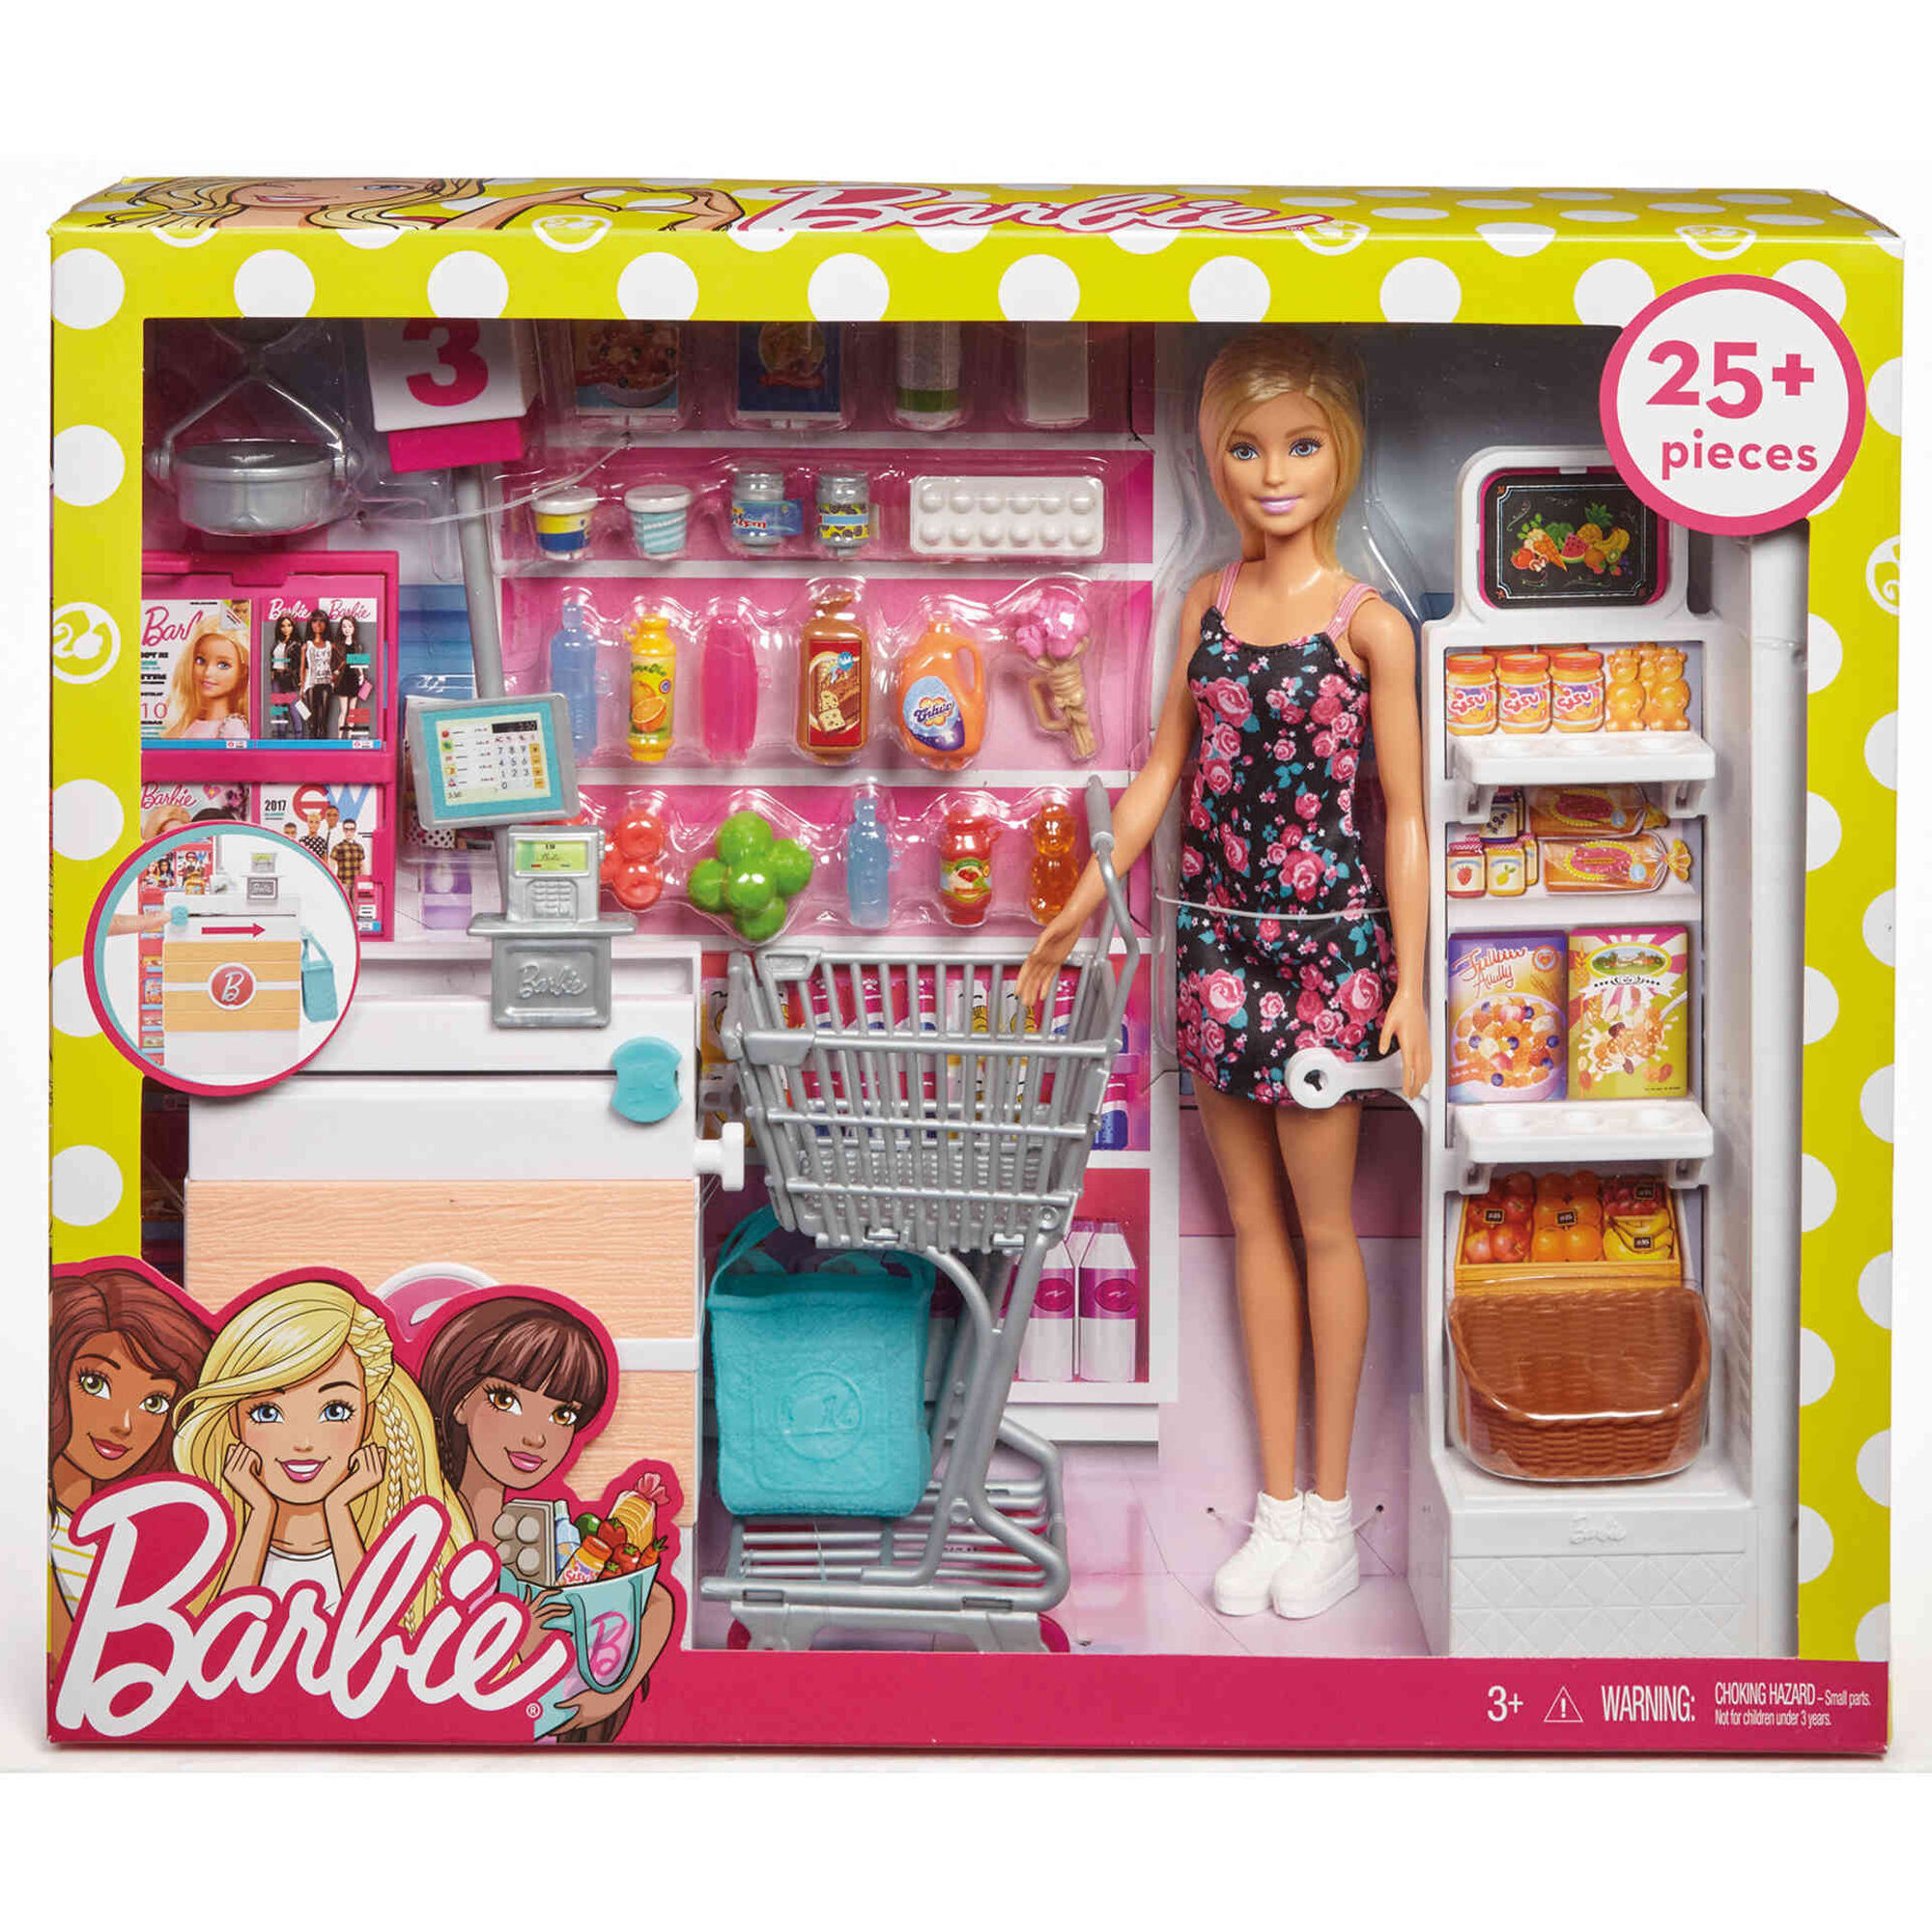 Игрушка барби купить. Набор Barbie в супермаркете, 28 см, frp01. Набор Barbie frp01 супермаркет. Куклы Барби плейсет. Кукла Барби Mattel супермаркет.